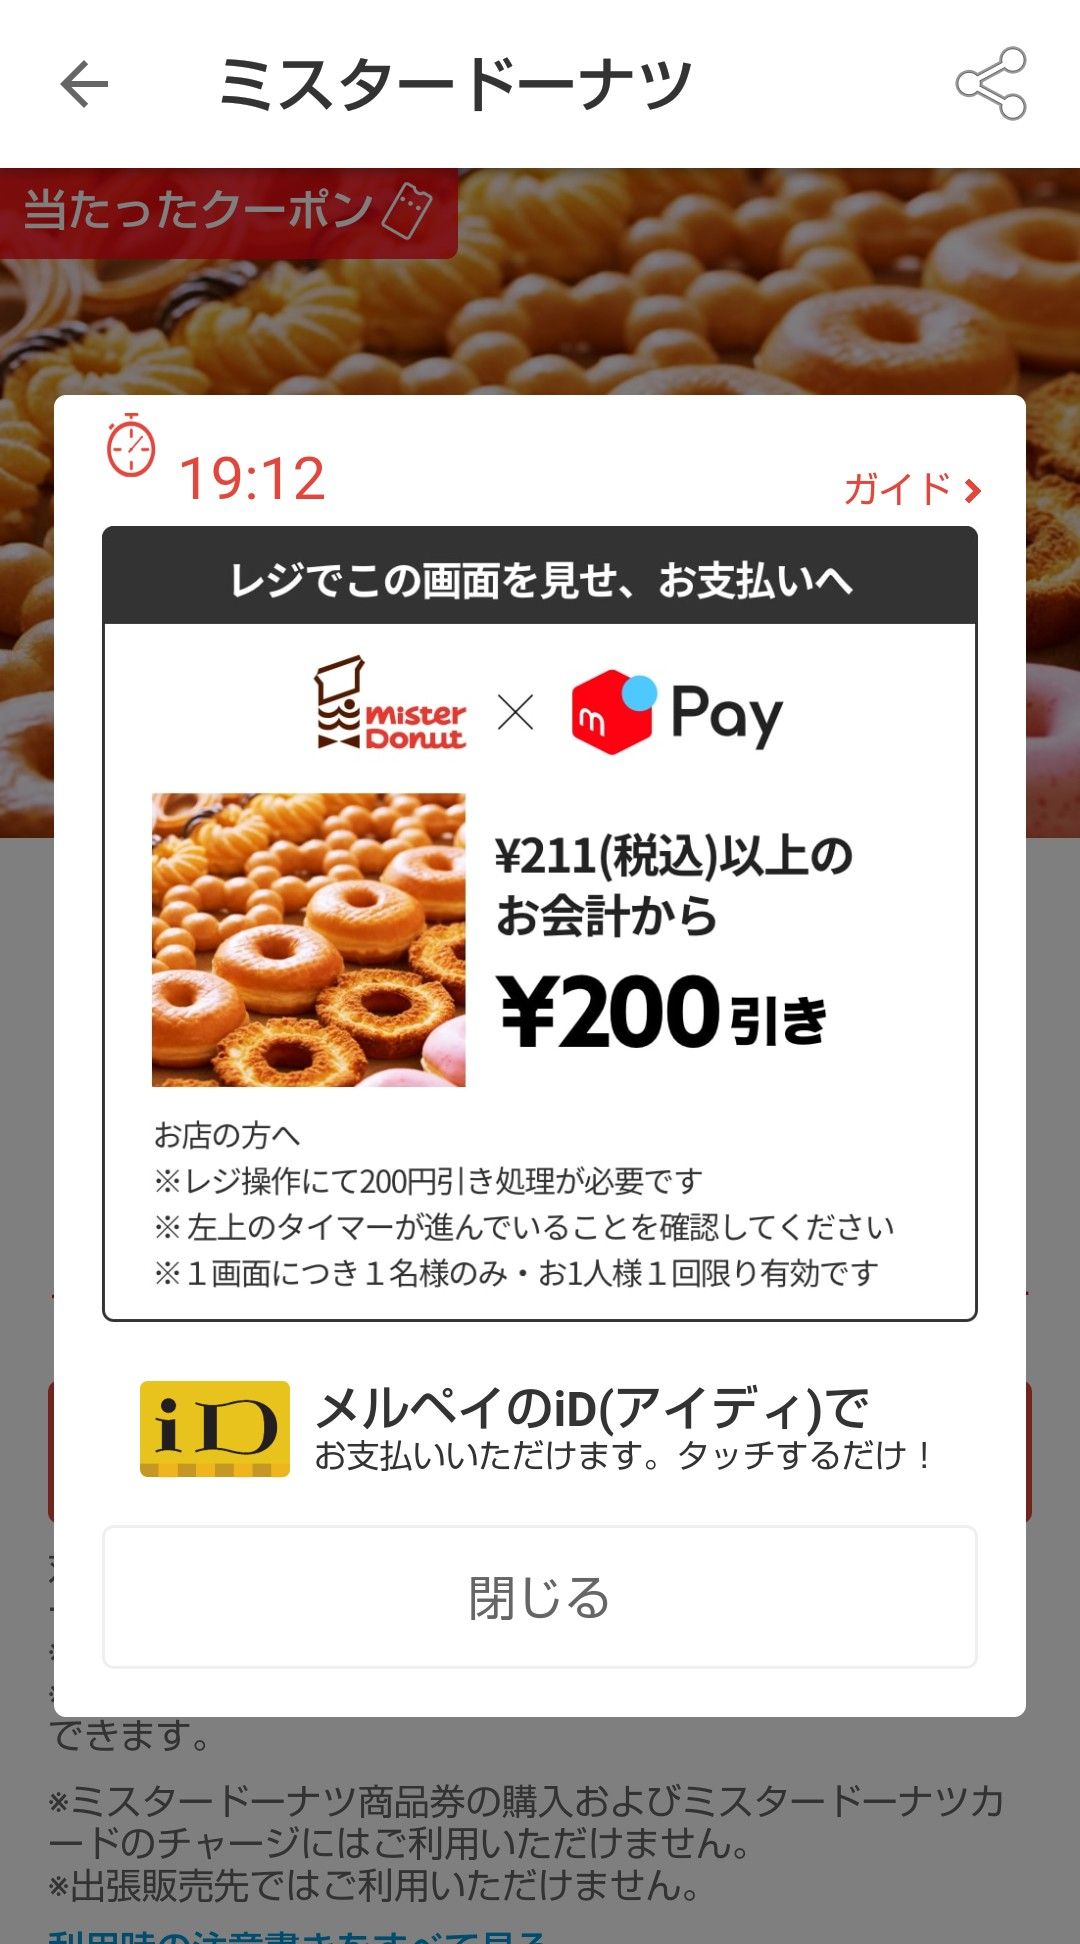 ミスド200円引き券 | indigagroup.com